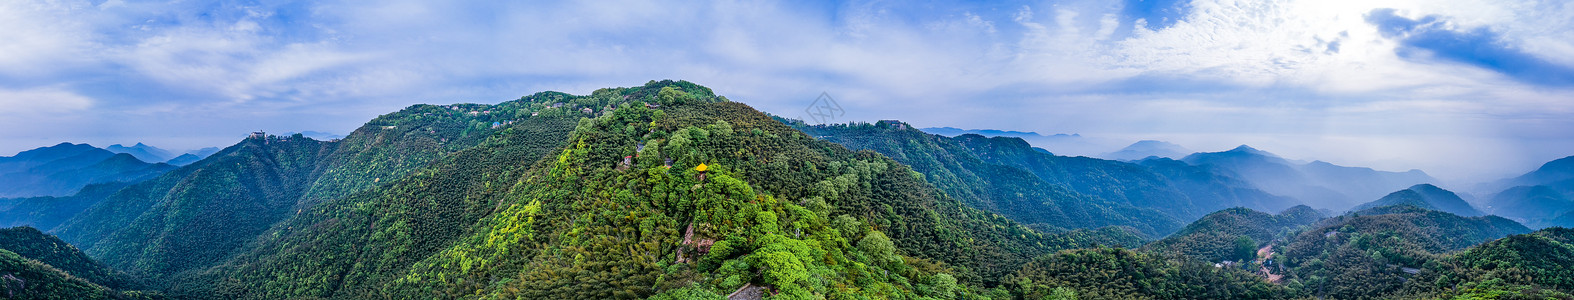 风景大图莫干山顶峰全景自然风景背景